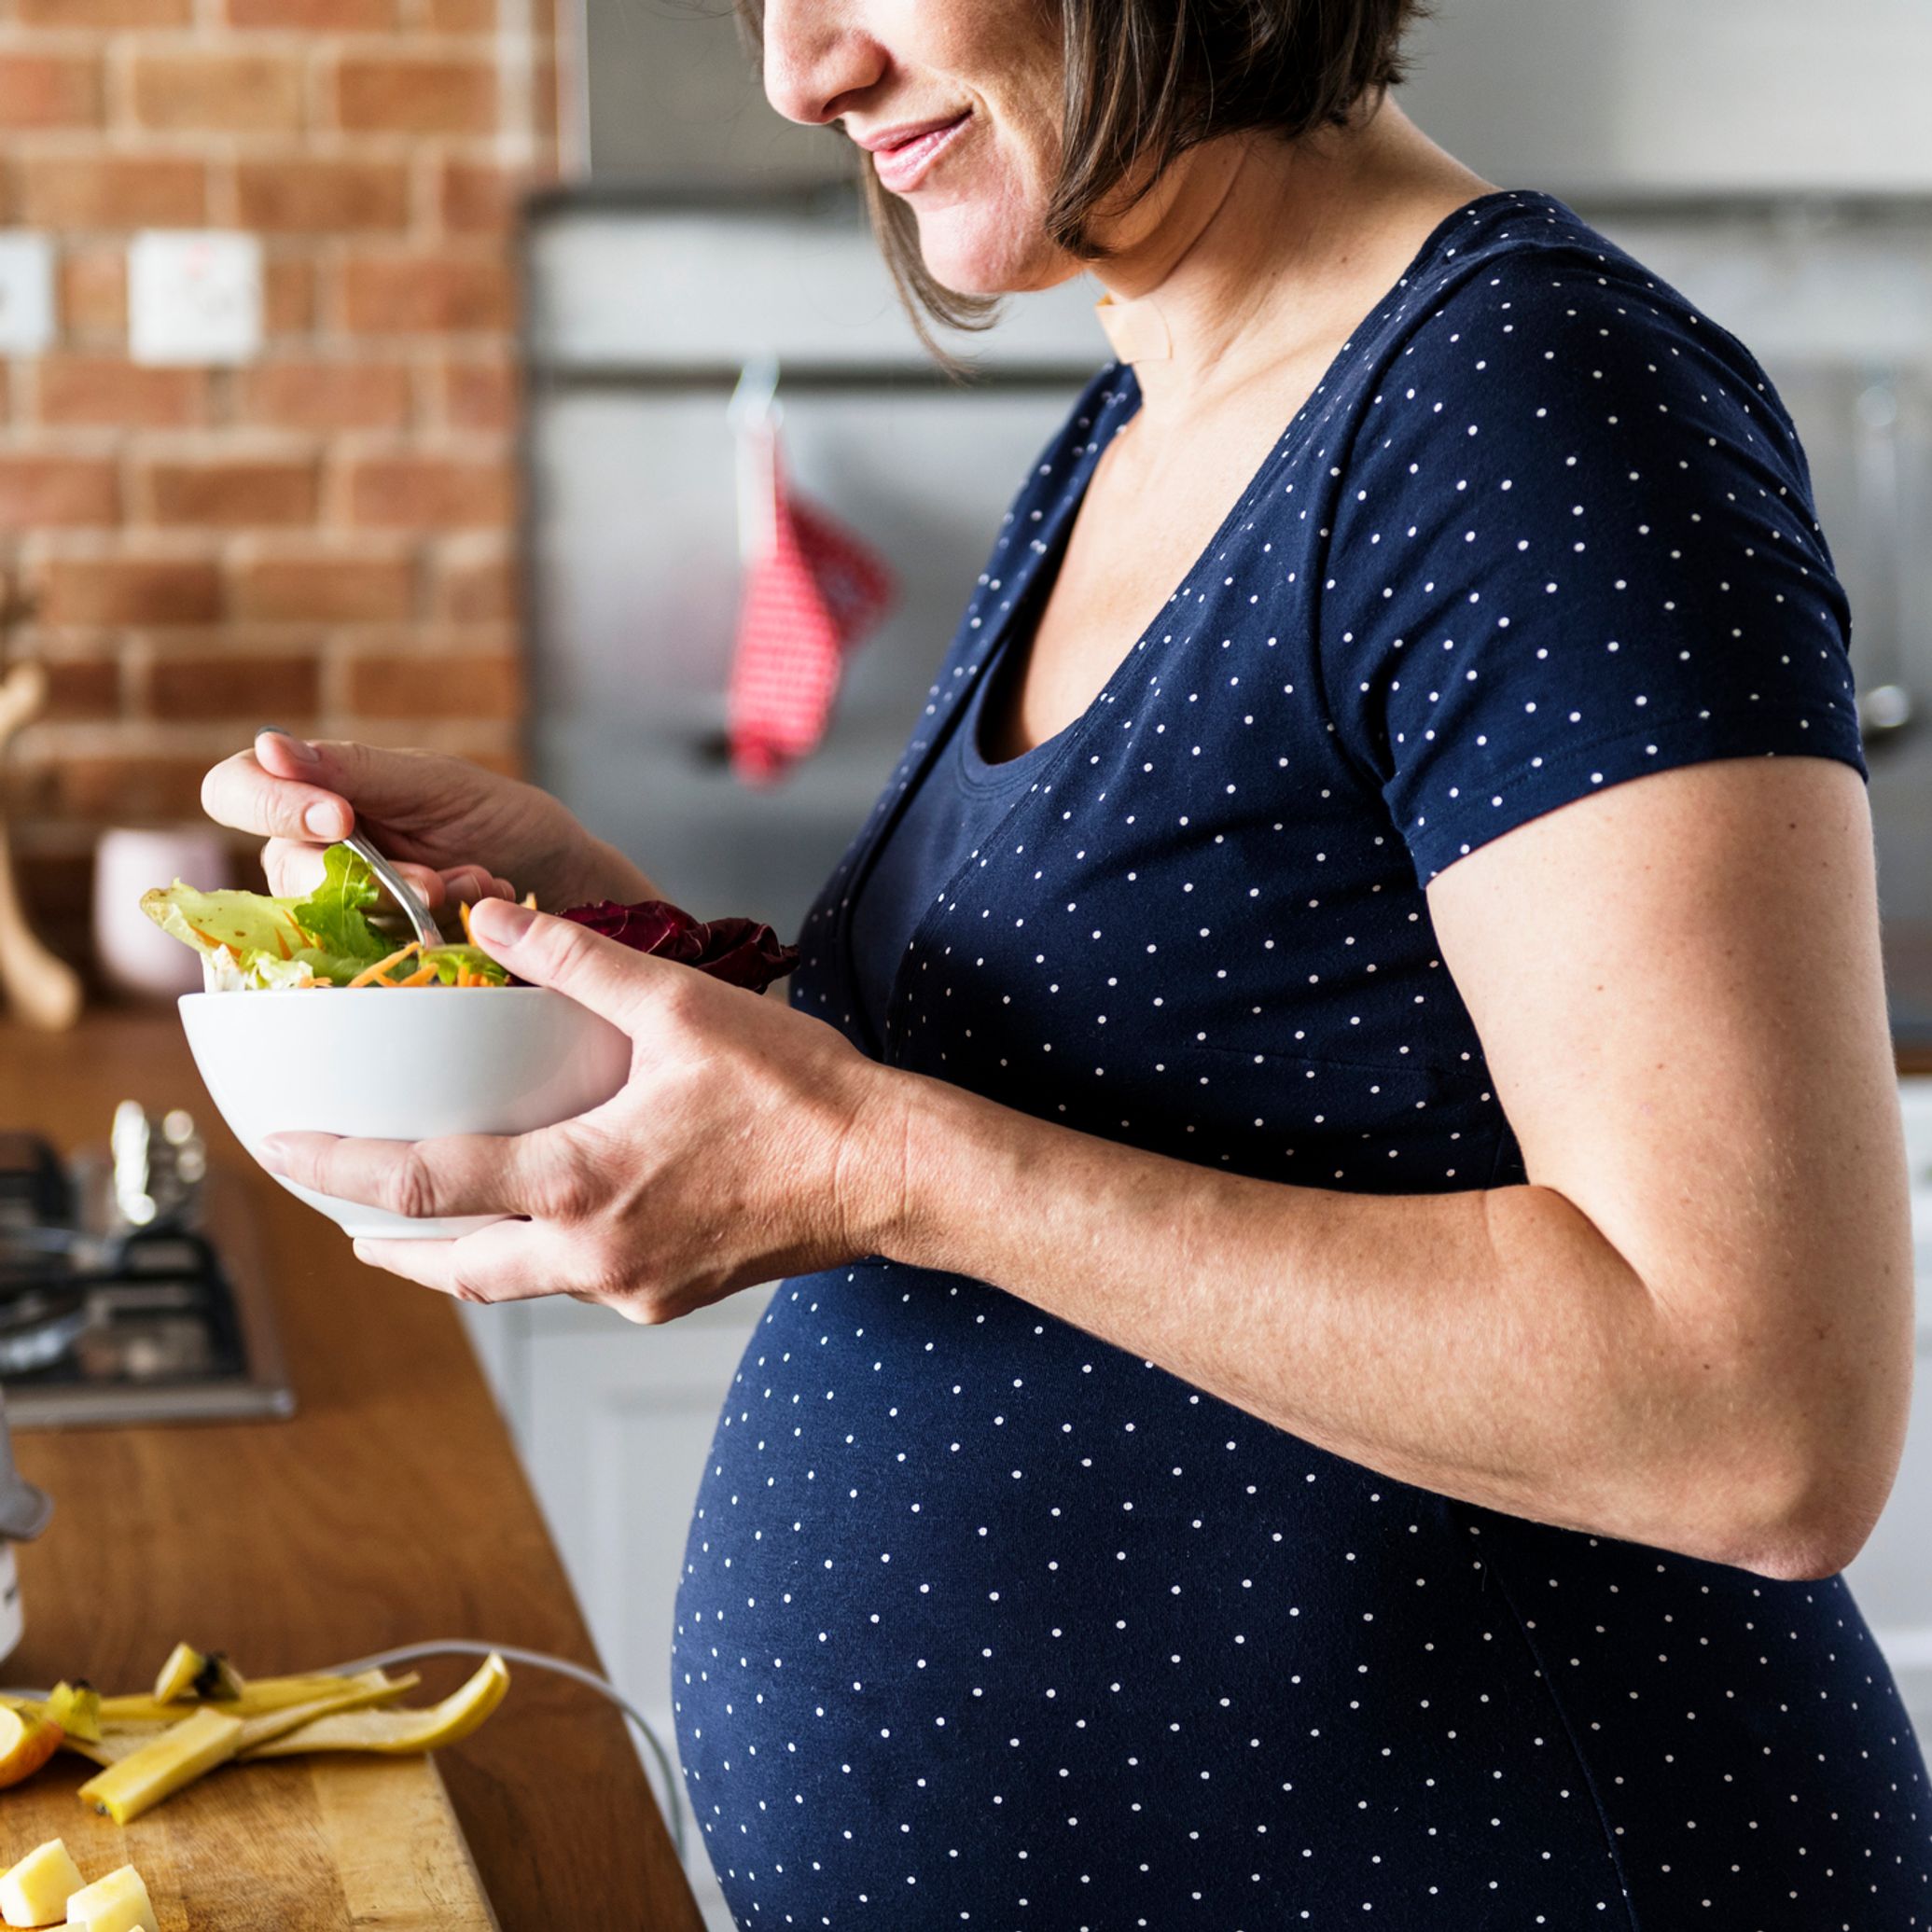 25 recettes pour femme enceinte pour une alimentation équilibrée